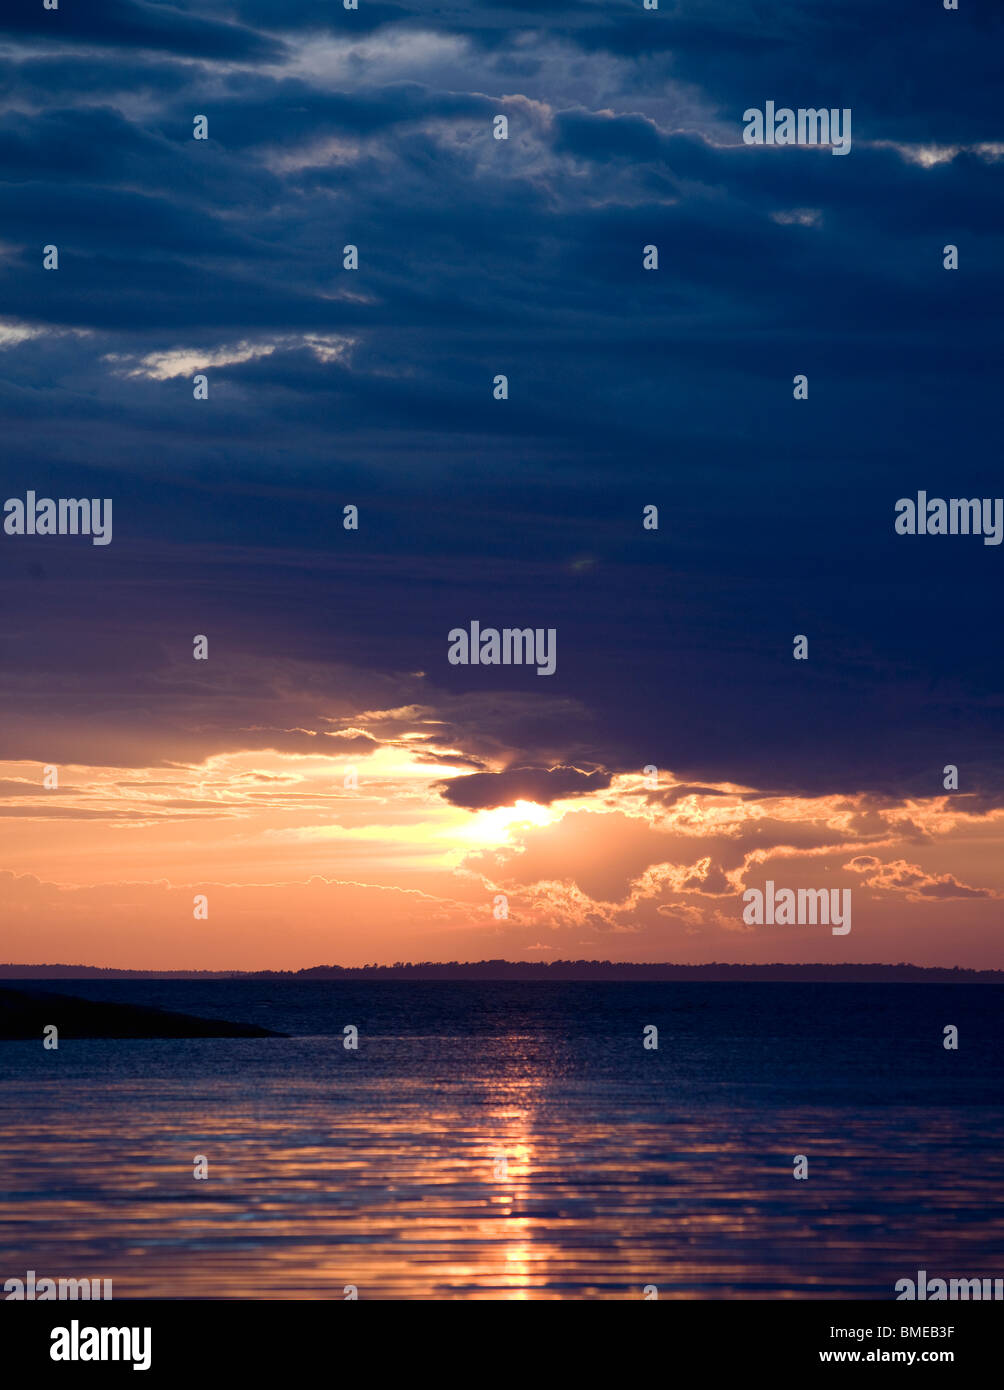 Scenic view of sun setting over sea Stock Photo